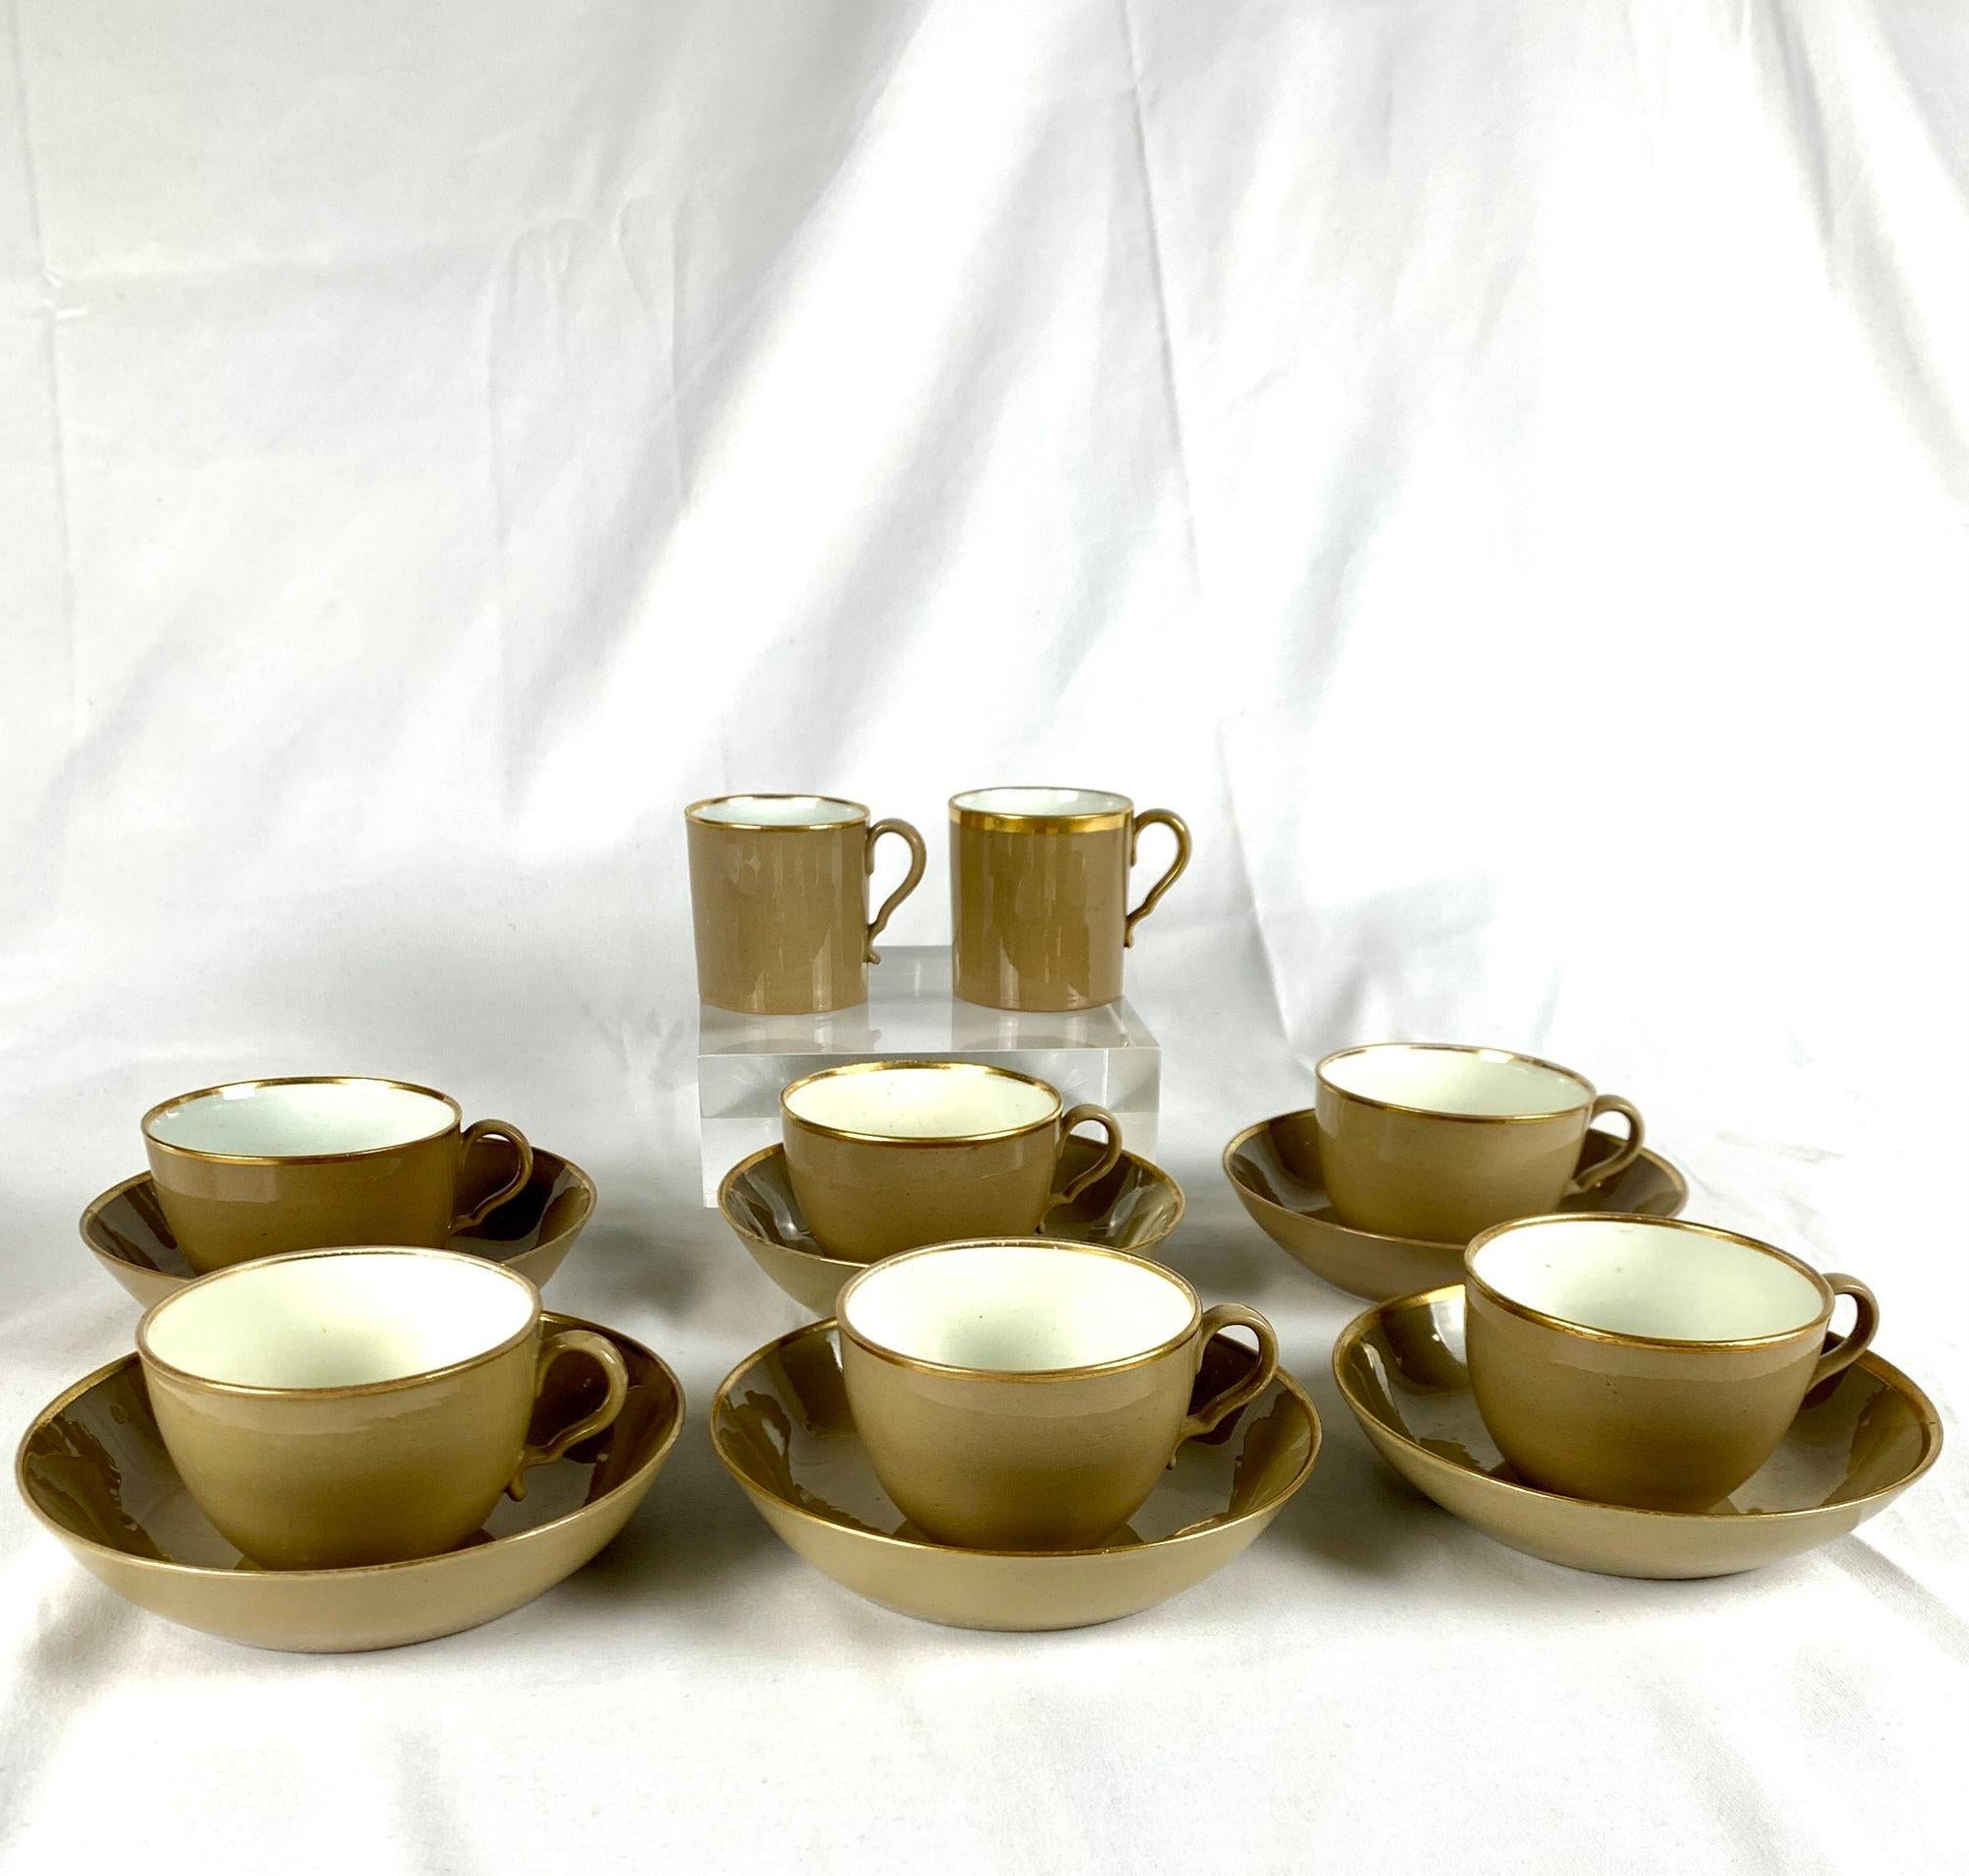 Dieses im frühen 19. Jahrhundert in England hergestellte Geschirr besteht aus sechs Teetassen und Untertassen sowie einem Paar Kaffeekannen.
Im Gegensatz zu anderen farbigen Töpferwaren, deren weißer Scherben in verschiedenen Farben bemalt oder mit